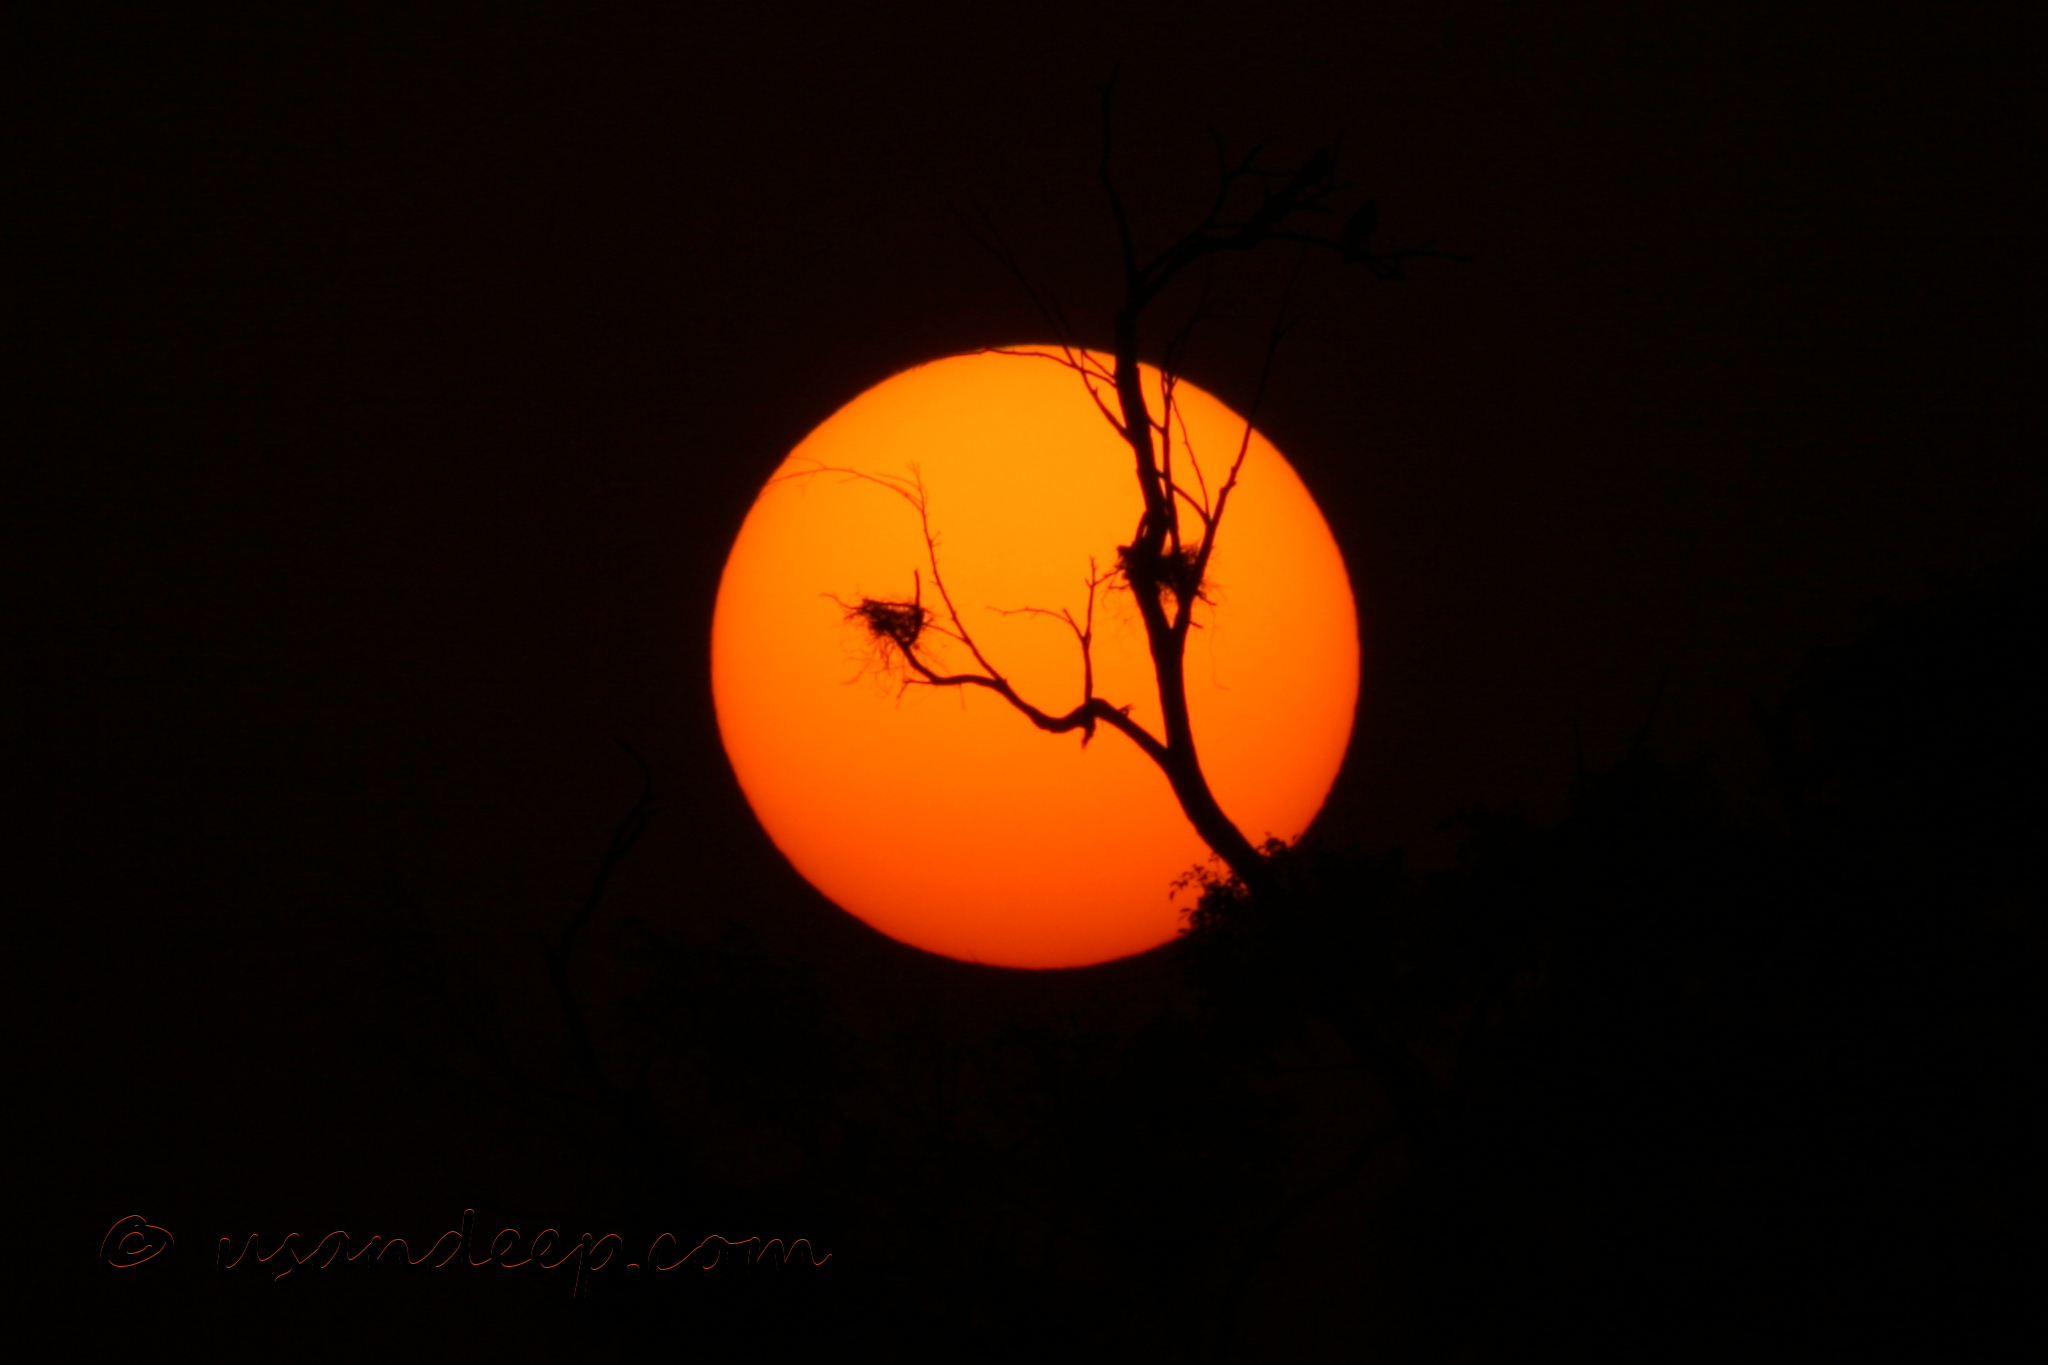 Sandeep 's World >> Setting sun and a nest